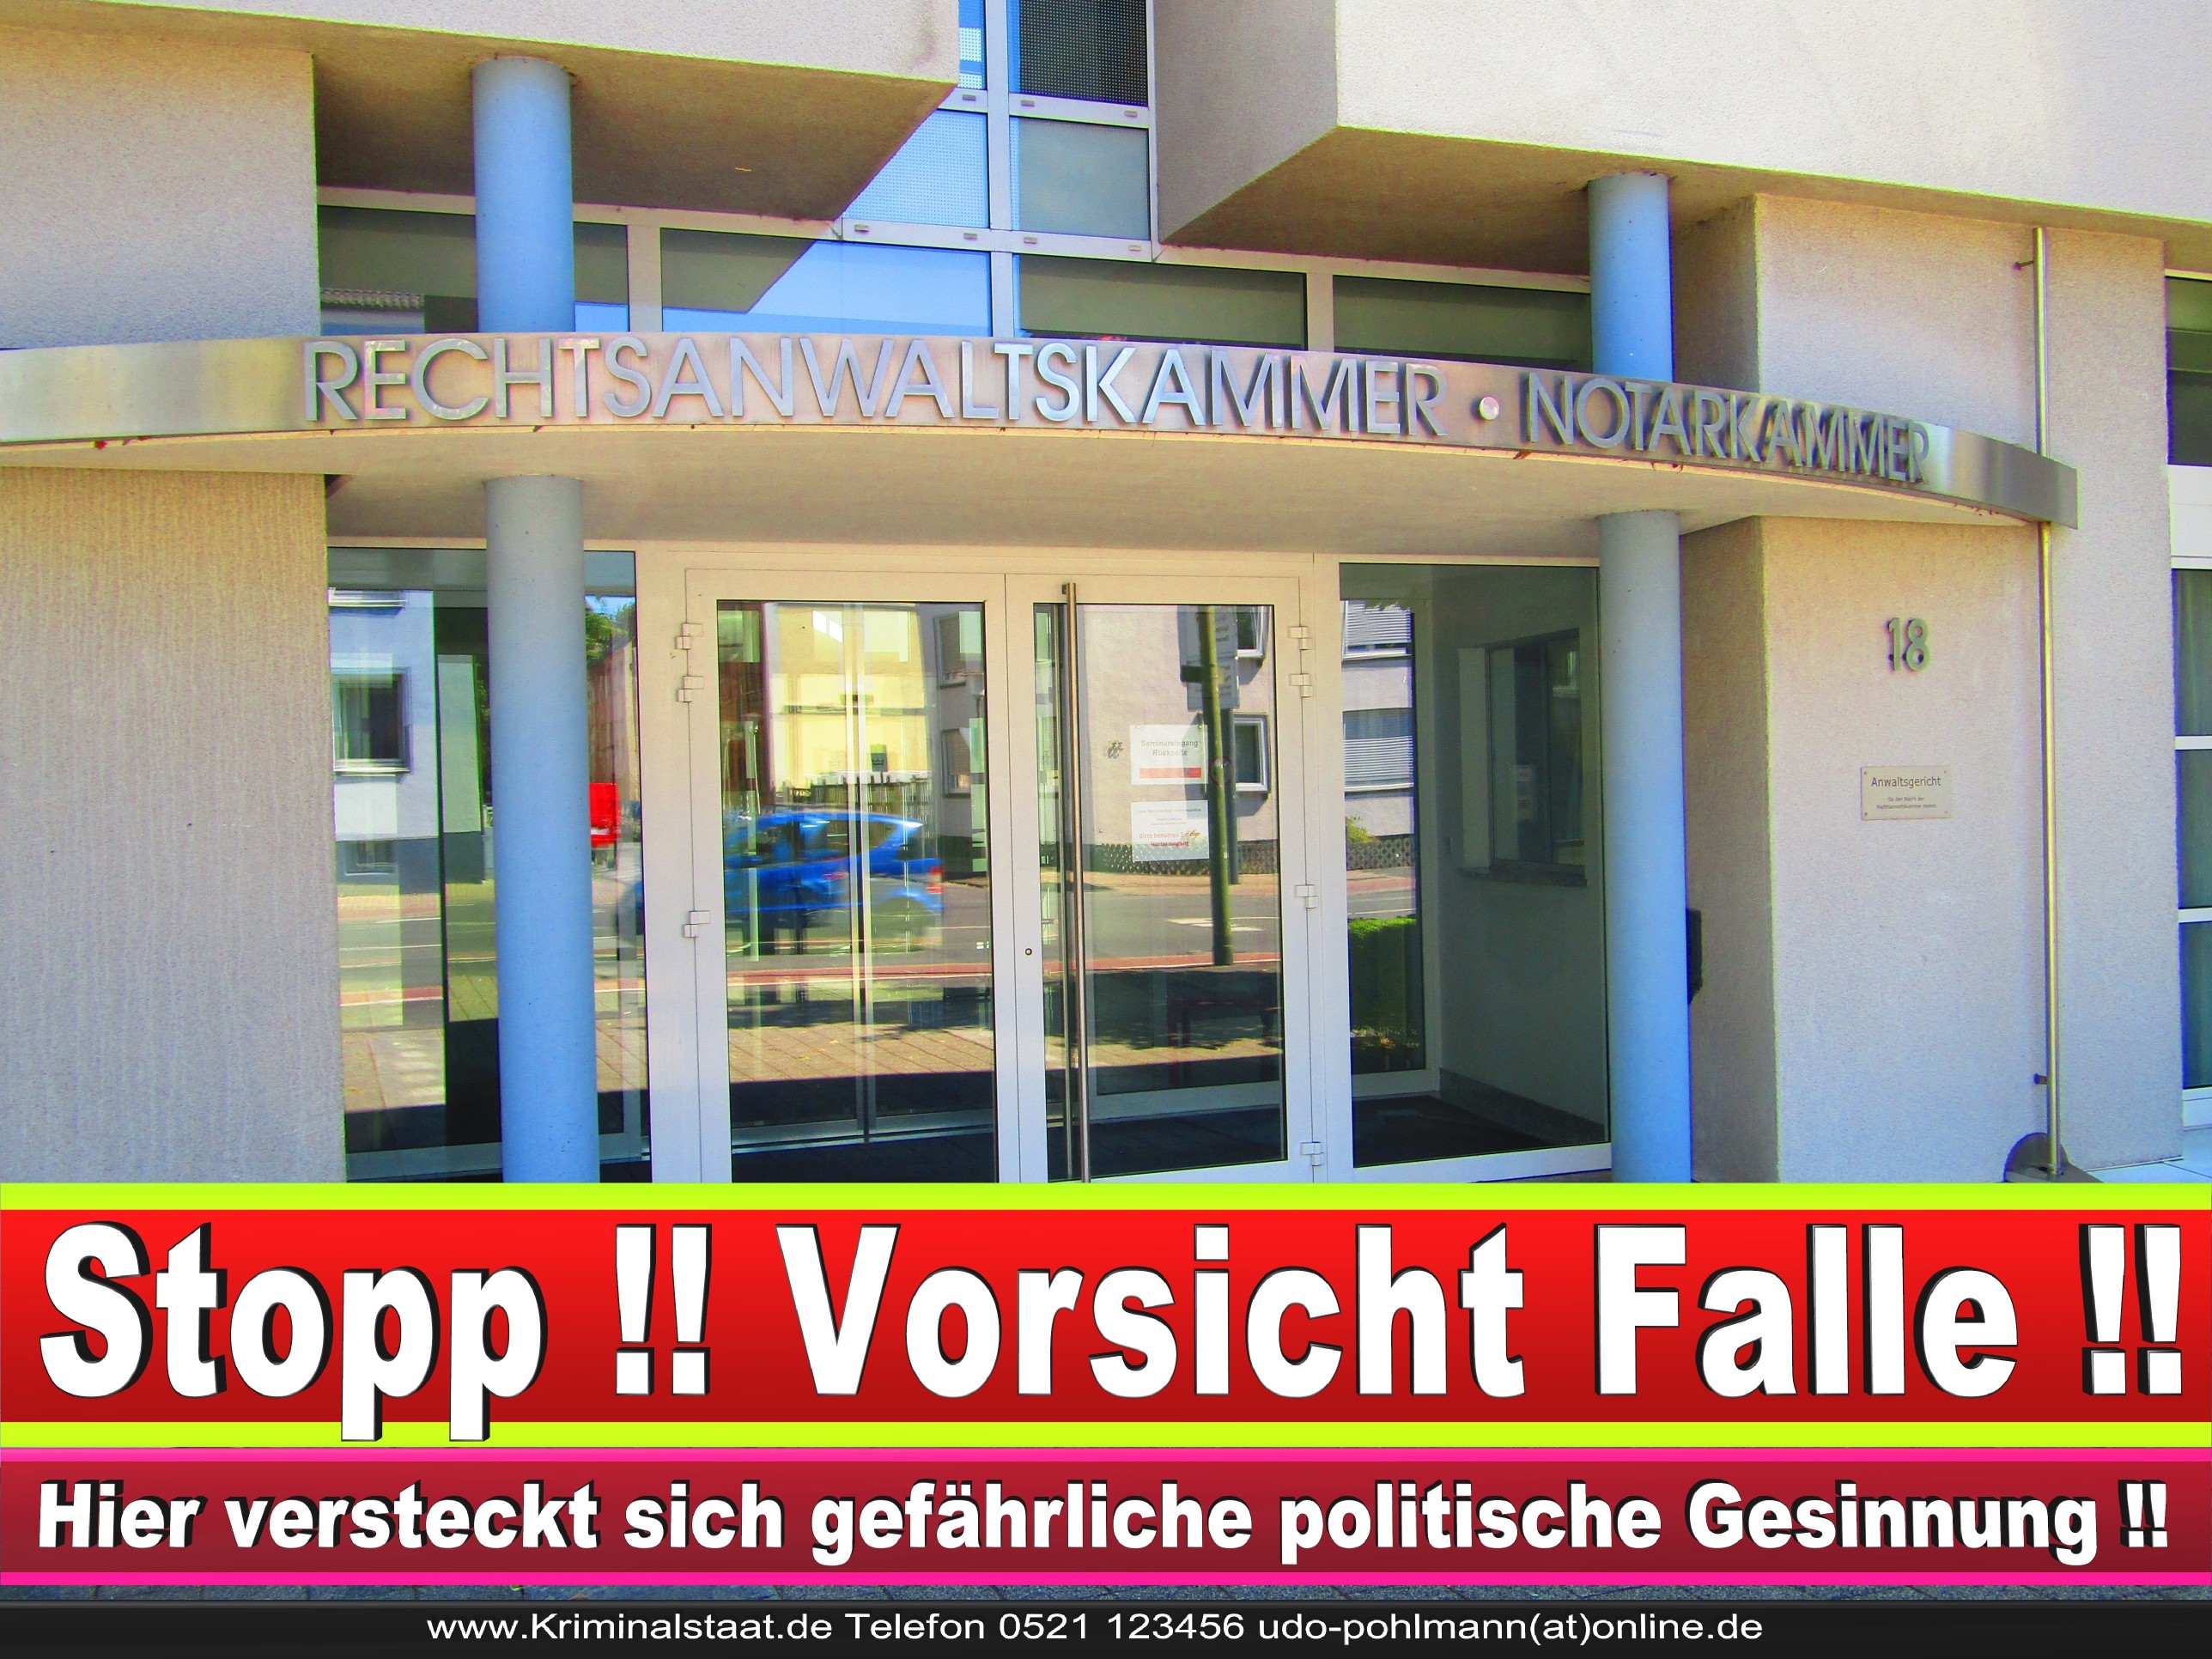 Rechtsanwaltskammer Hamm NRW Justizminister Rechtsanwalt Notar Vermögensverfall Urteil Rechtsprechung CDU SPD FDP Berufsordnung Rechtsanwälte Rechtsprechung (9) 1